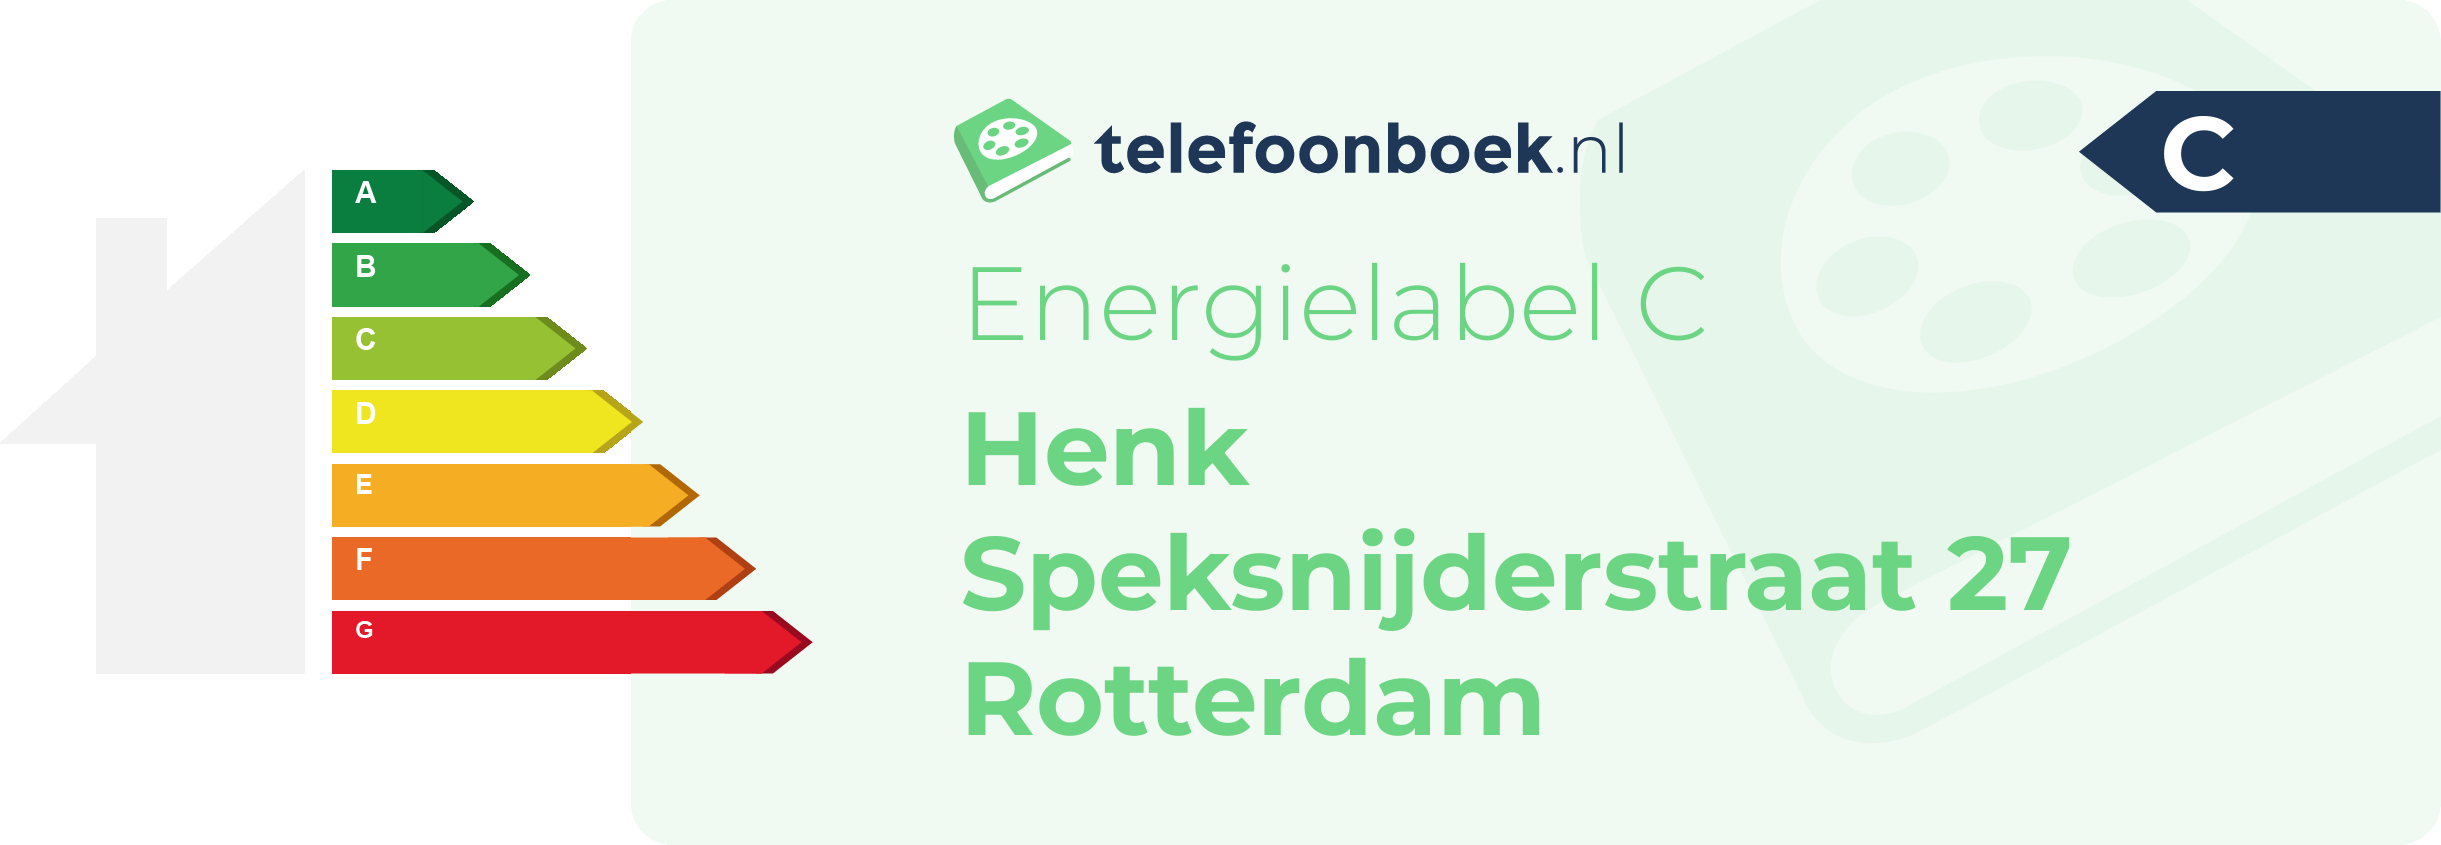 Energielabel Henk Speksnijderstraat 27 Rotterdam